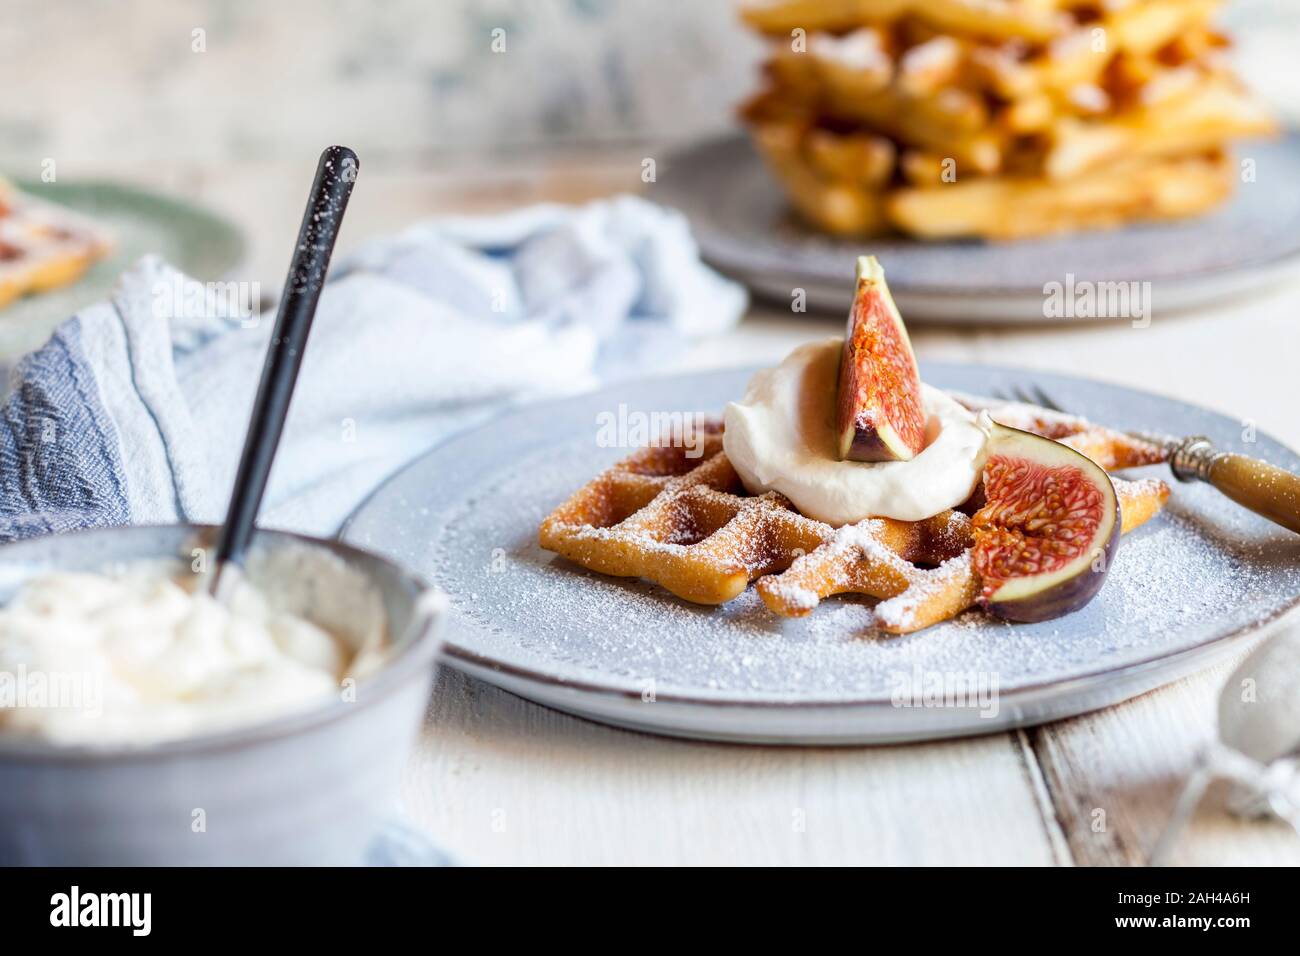 Espesor gofre belga con crema batida, azúcar en polvo y las figs. Foto de stock